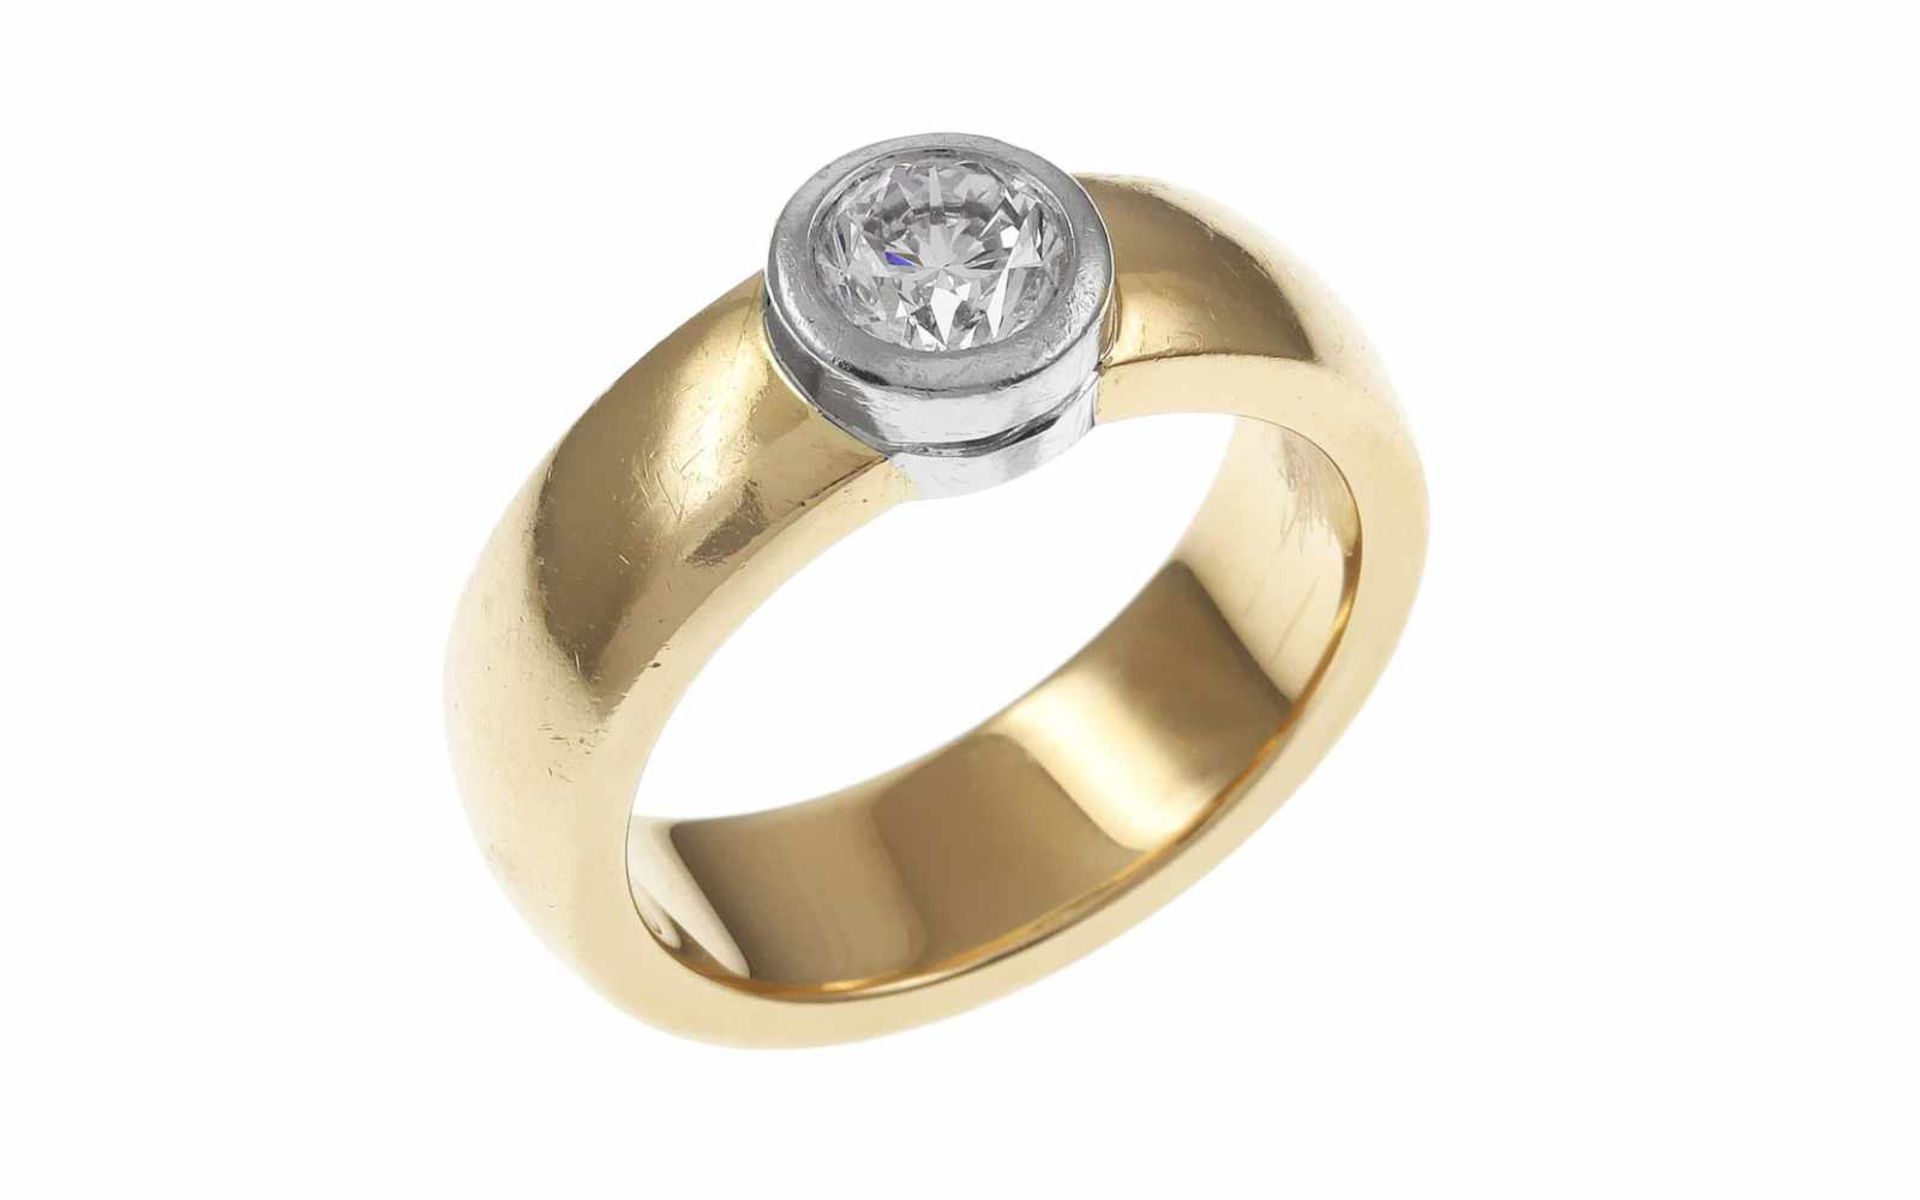 RingRing 585/- Gelbgold mit Diamant, Ringgröße ca. 62, 1 Diamant ca. 1,00 ct, D/if, 15,45g